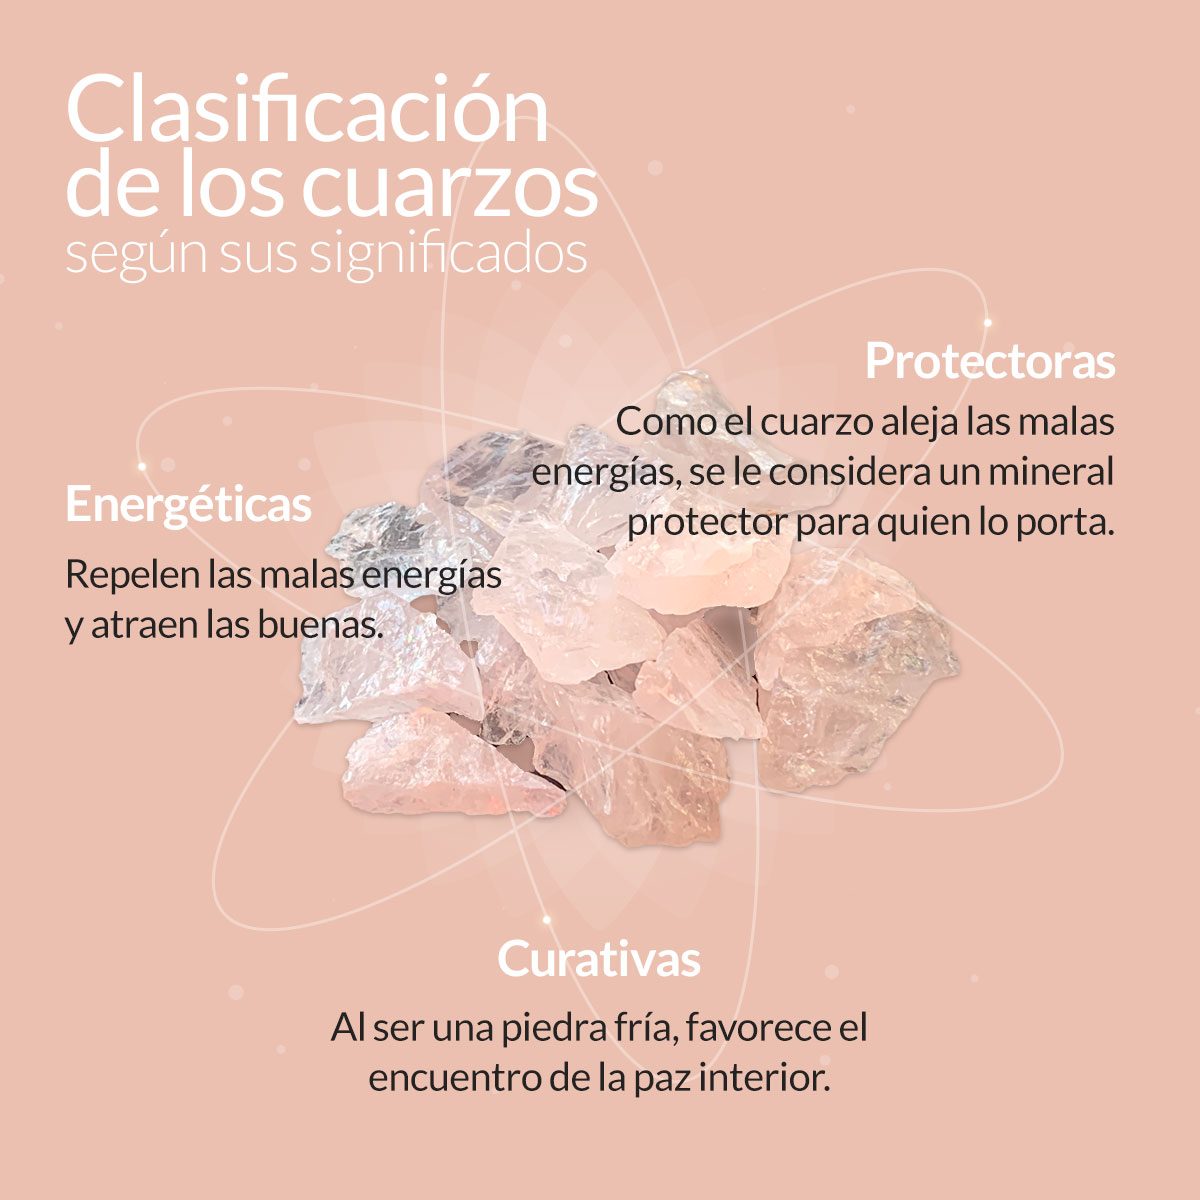 clasificacion-de-los-cuarzos-infografia